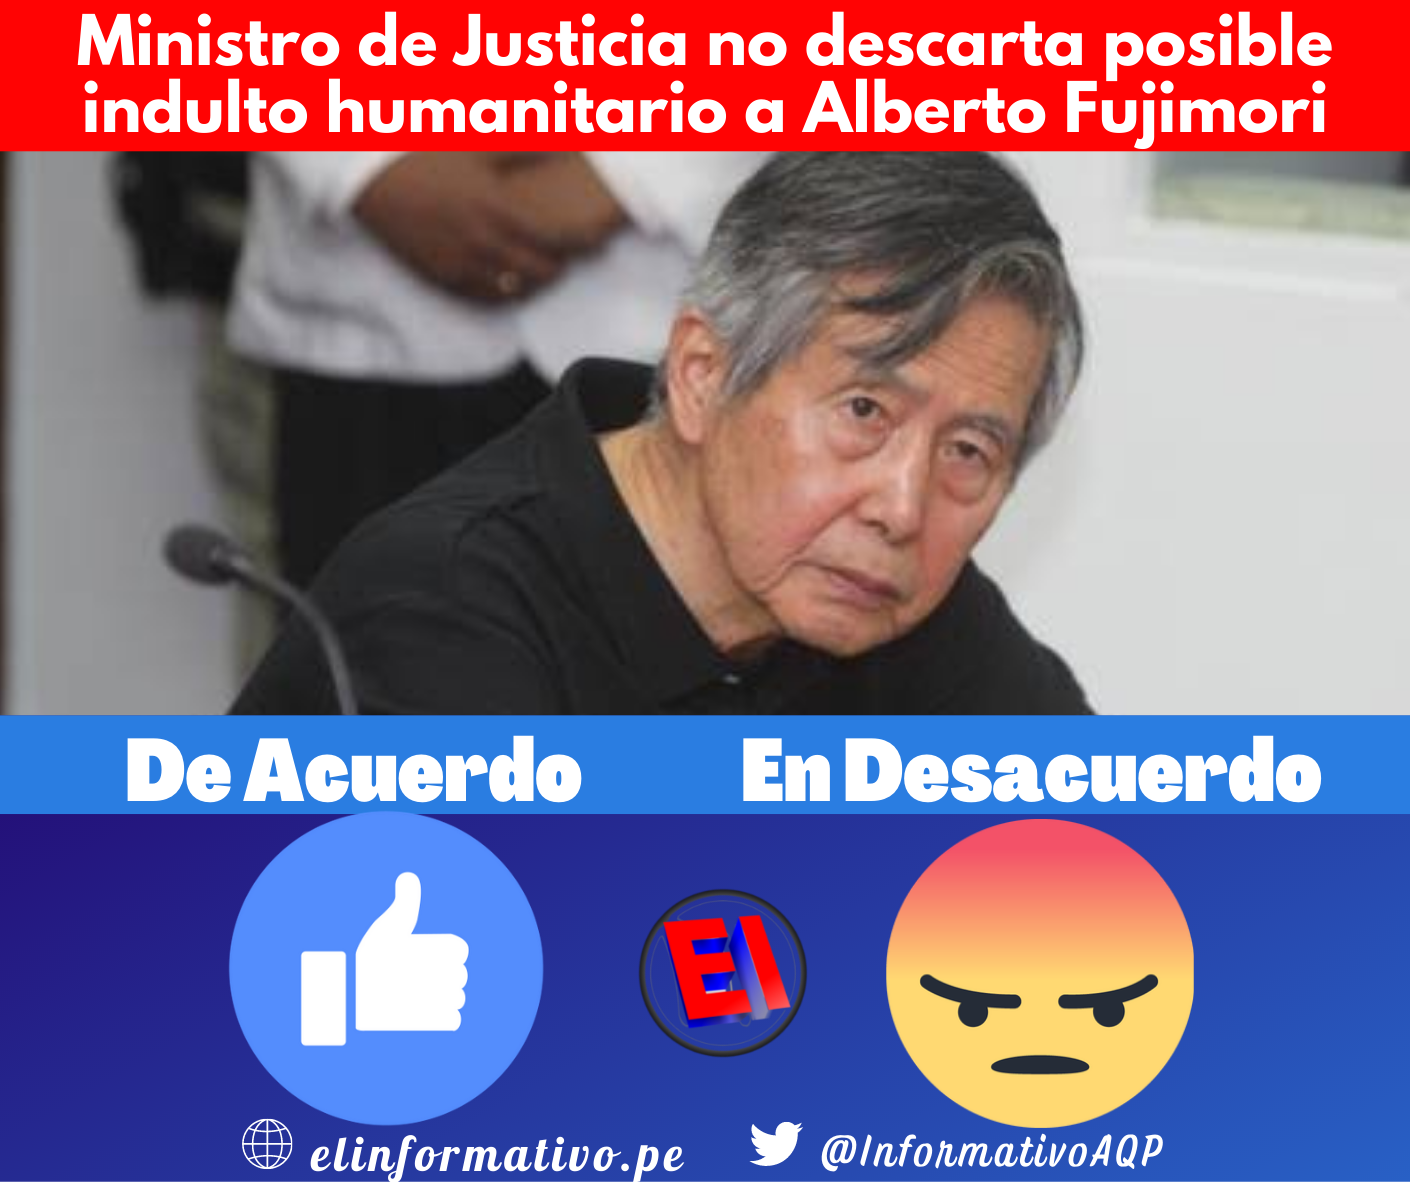 Ministro de Justicia no descarta indulto humanitario para Alberto Fujimori